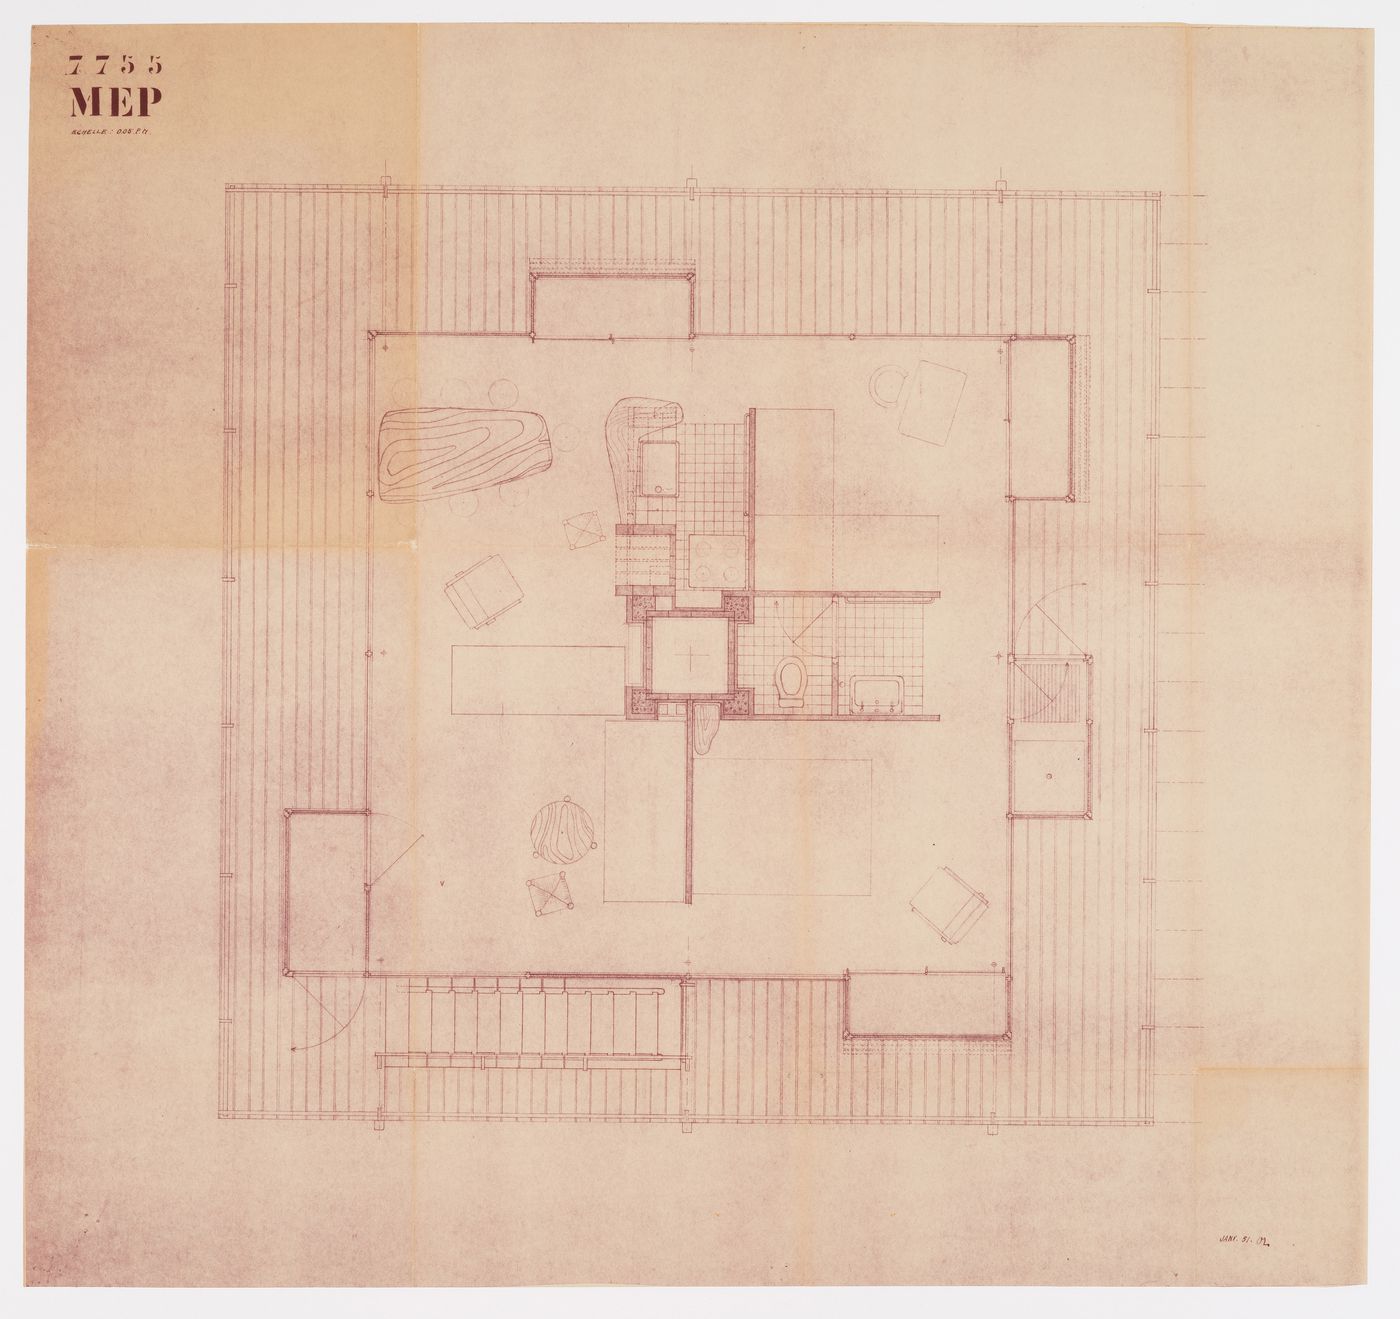 Floor plan for the Villa MEP